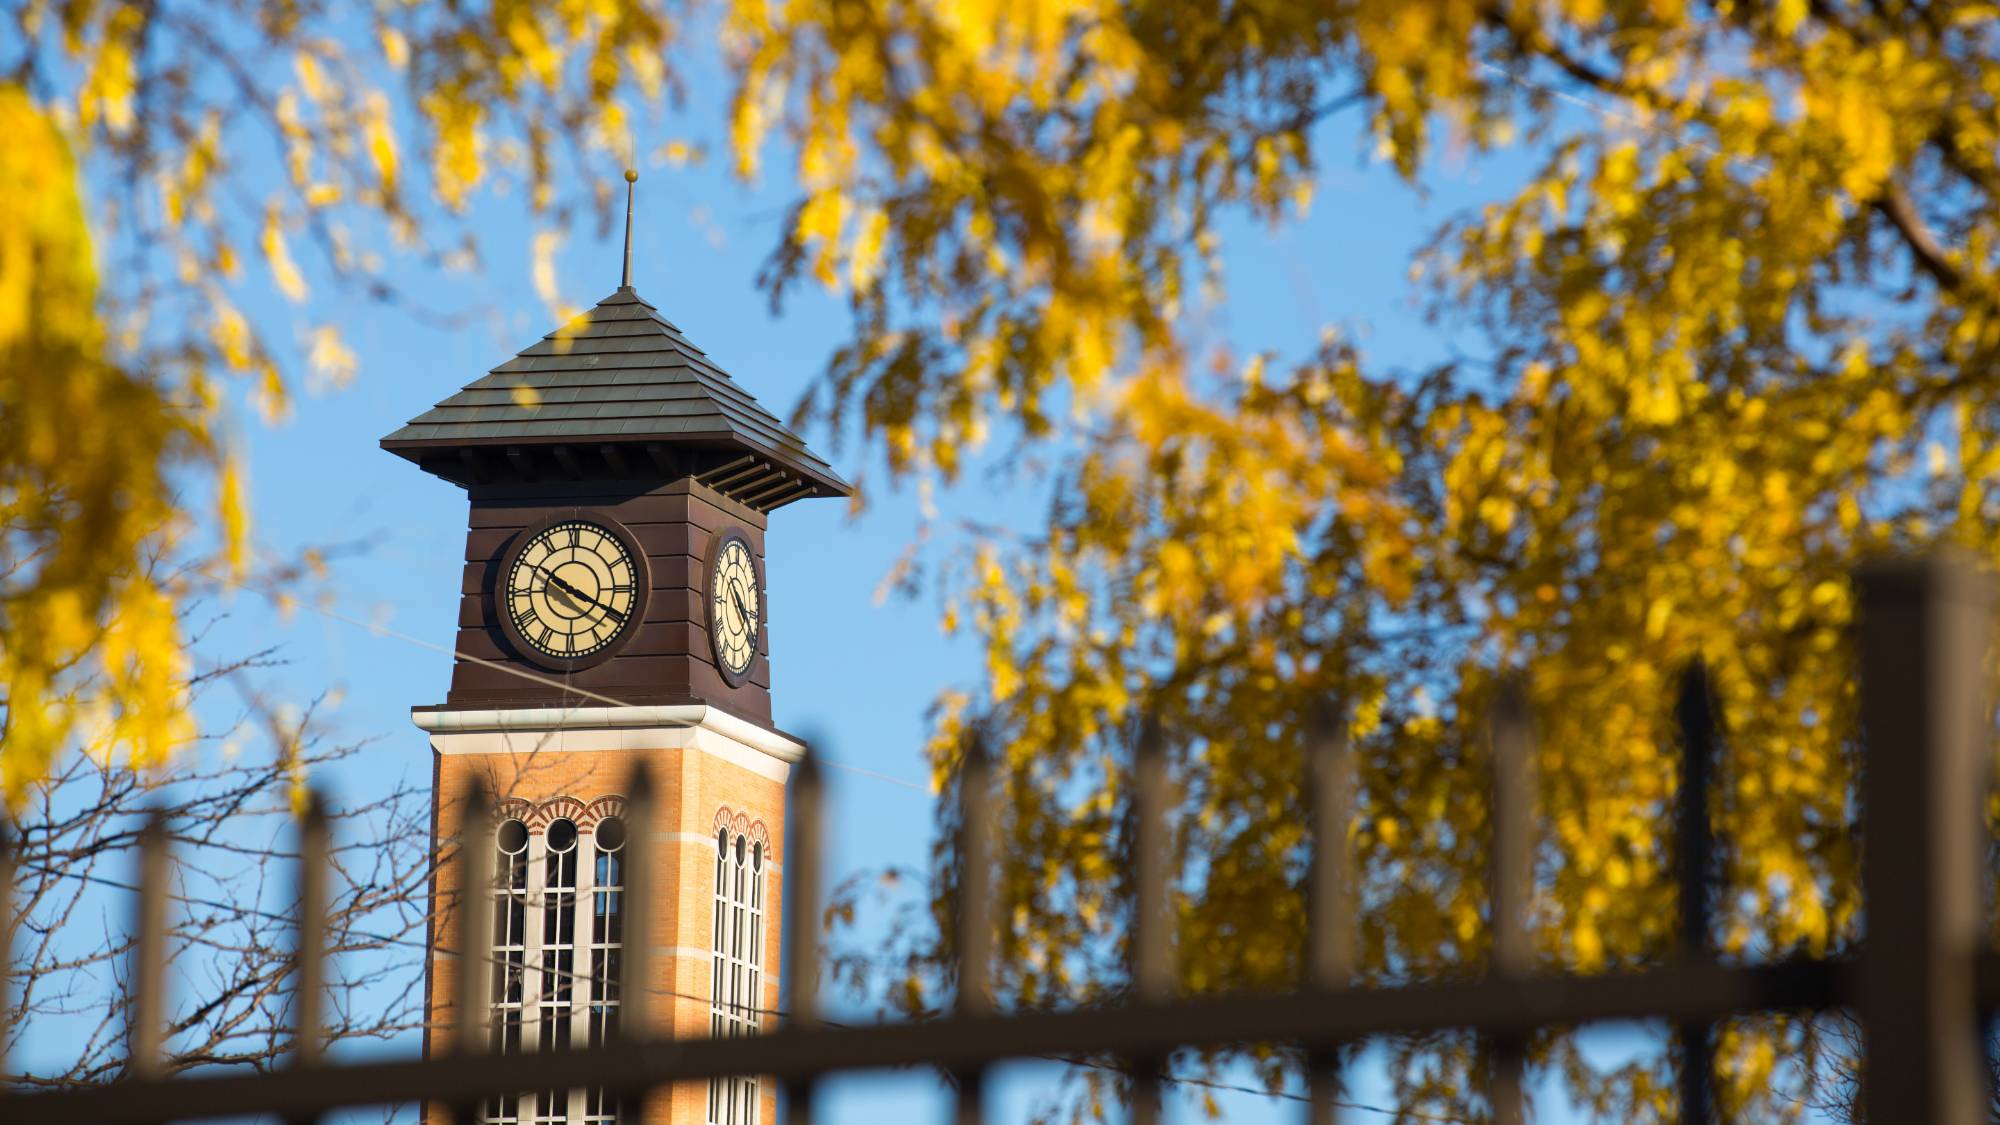 Pew Campus Clock tower